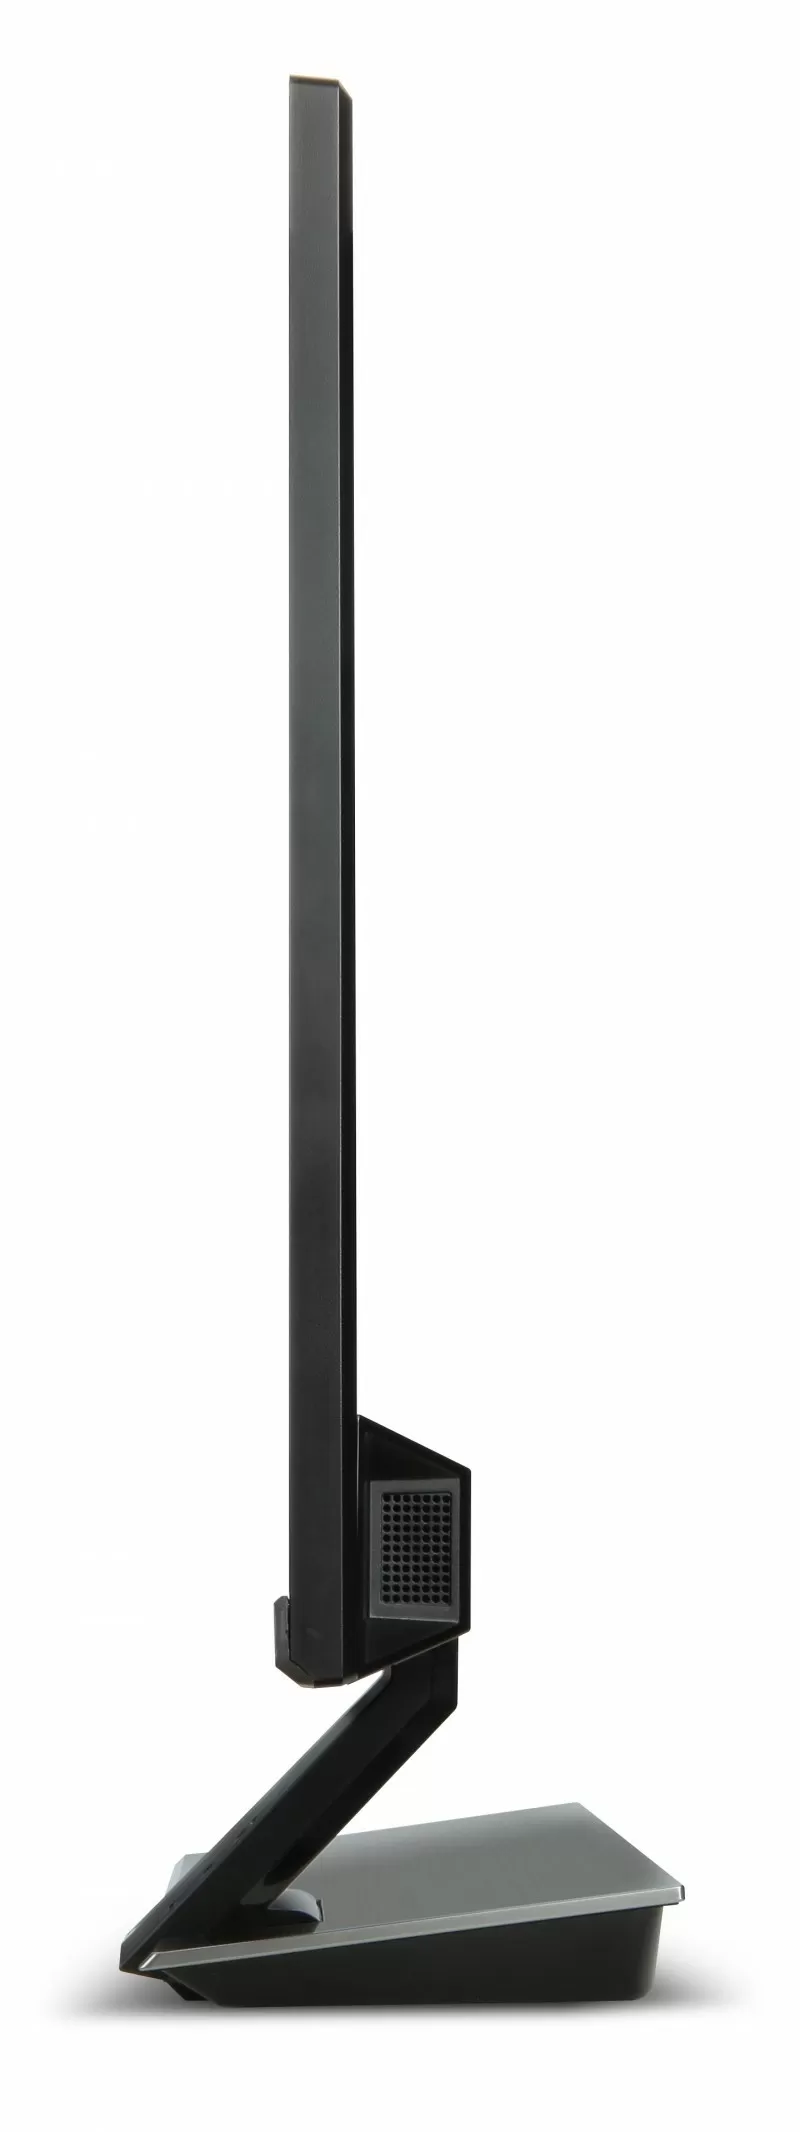 Acer s275hlbmii (черный) - купить , скидки, цена, отзывы, обзор, характеристики - мониторы